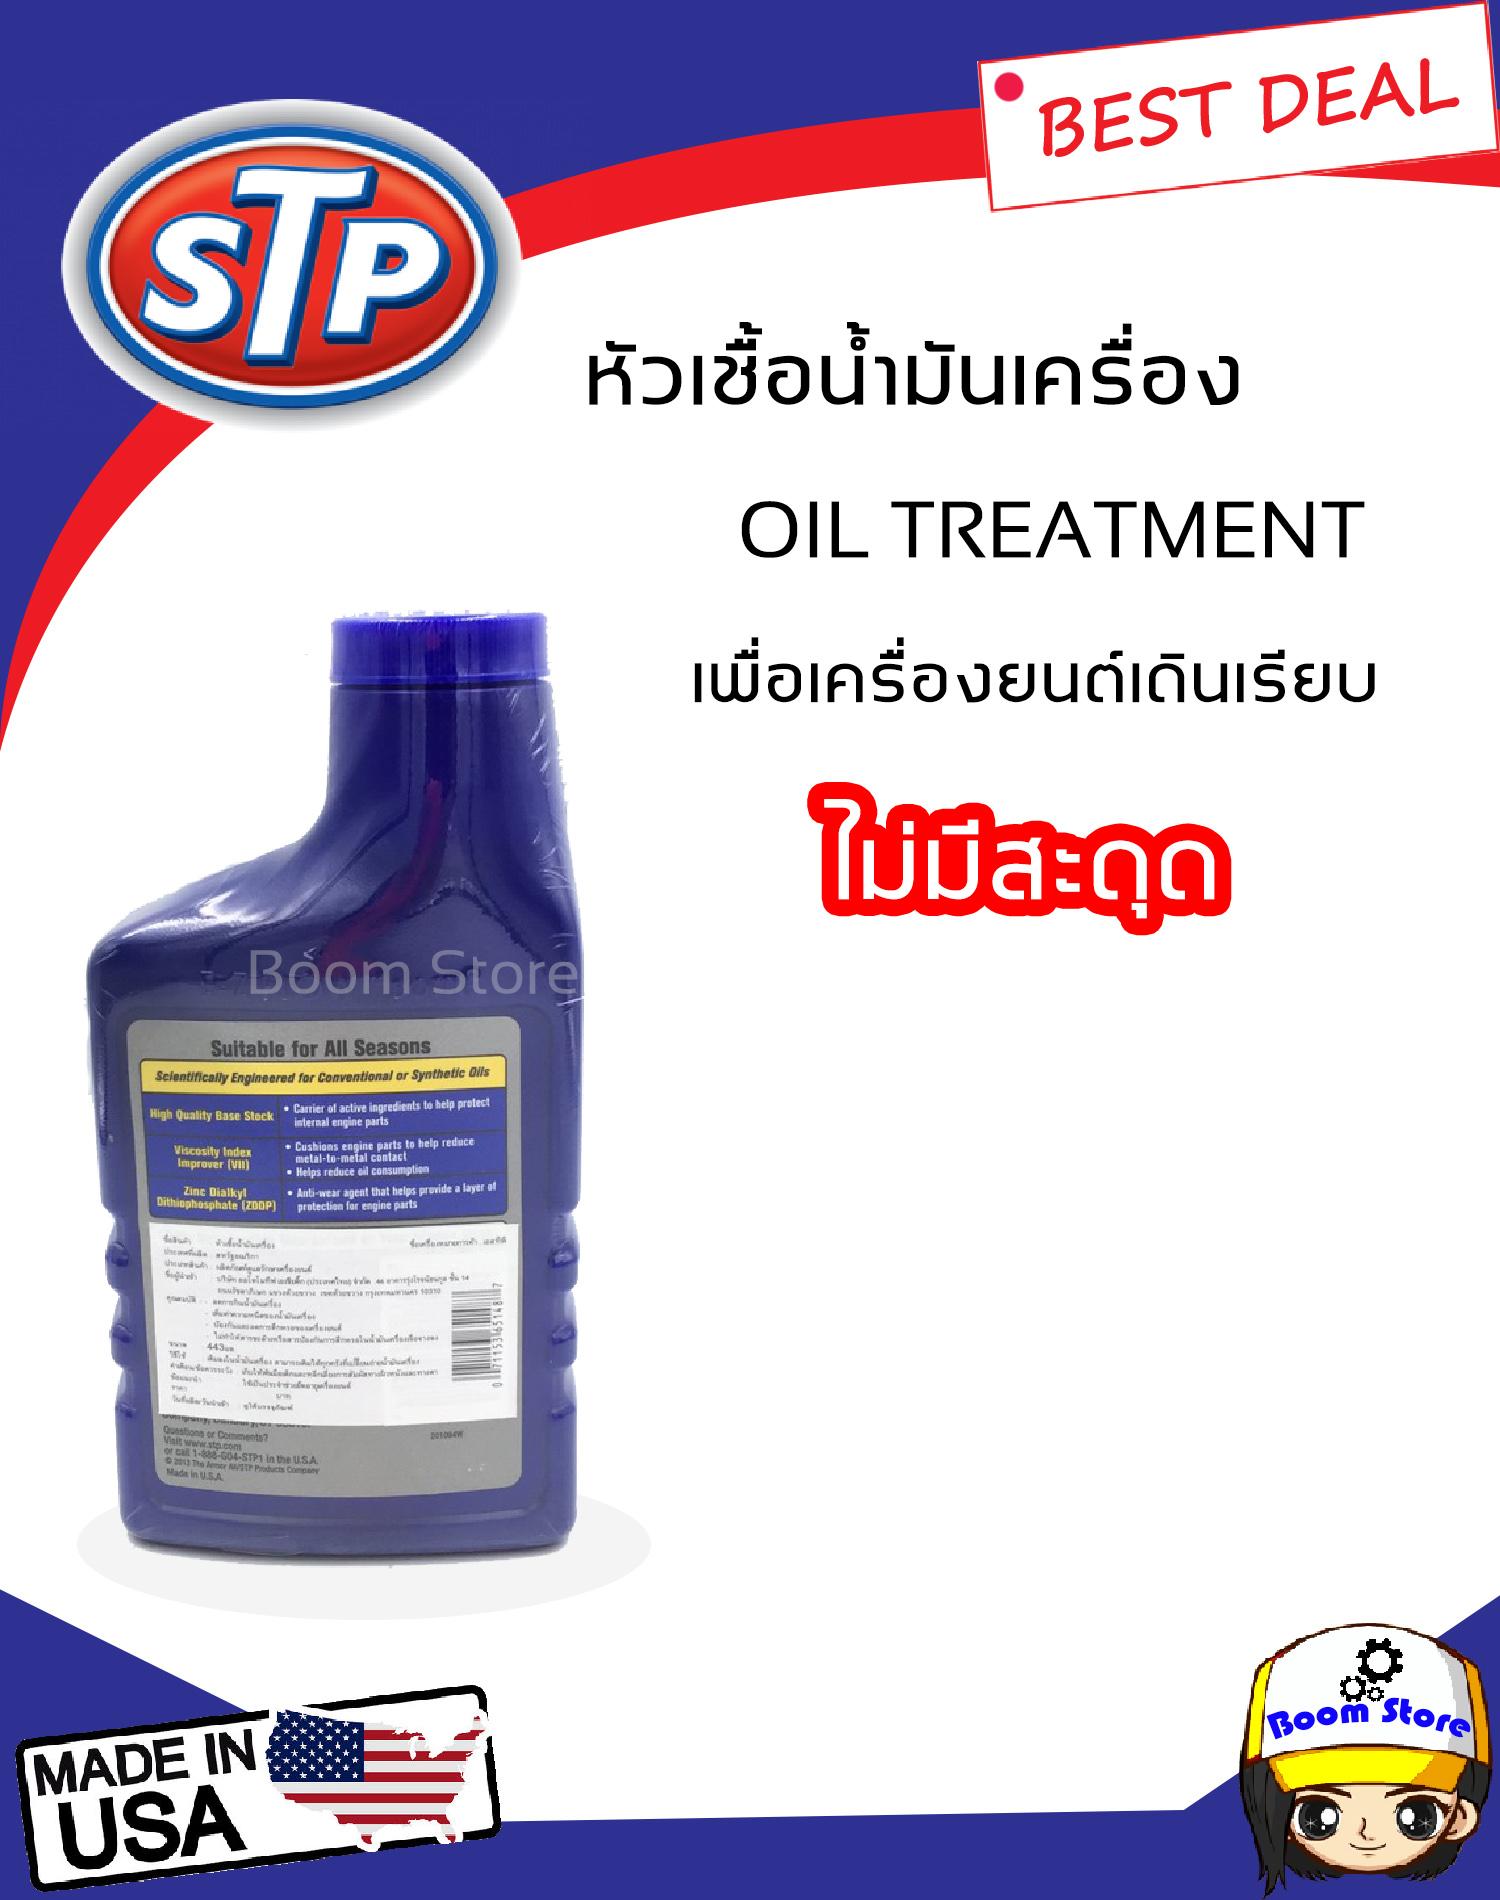 มุมมองเพิ่มเติมเกี่ยวกับ STP หัวเชื้อน้ำมันเครื่องเบนซิน  (STP Oil Treatment) ขนาด 15FL OZ (443 ml)